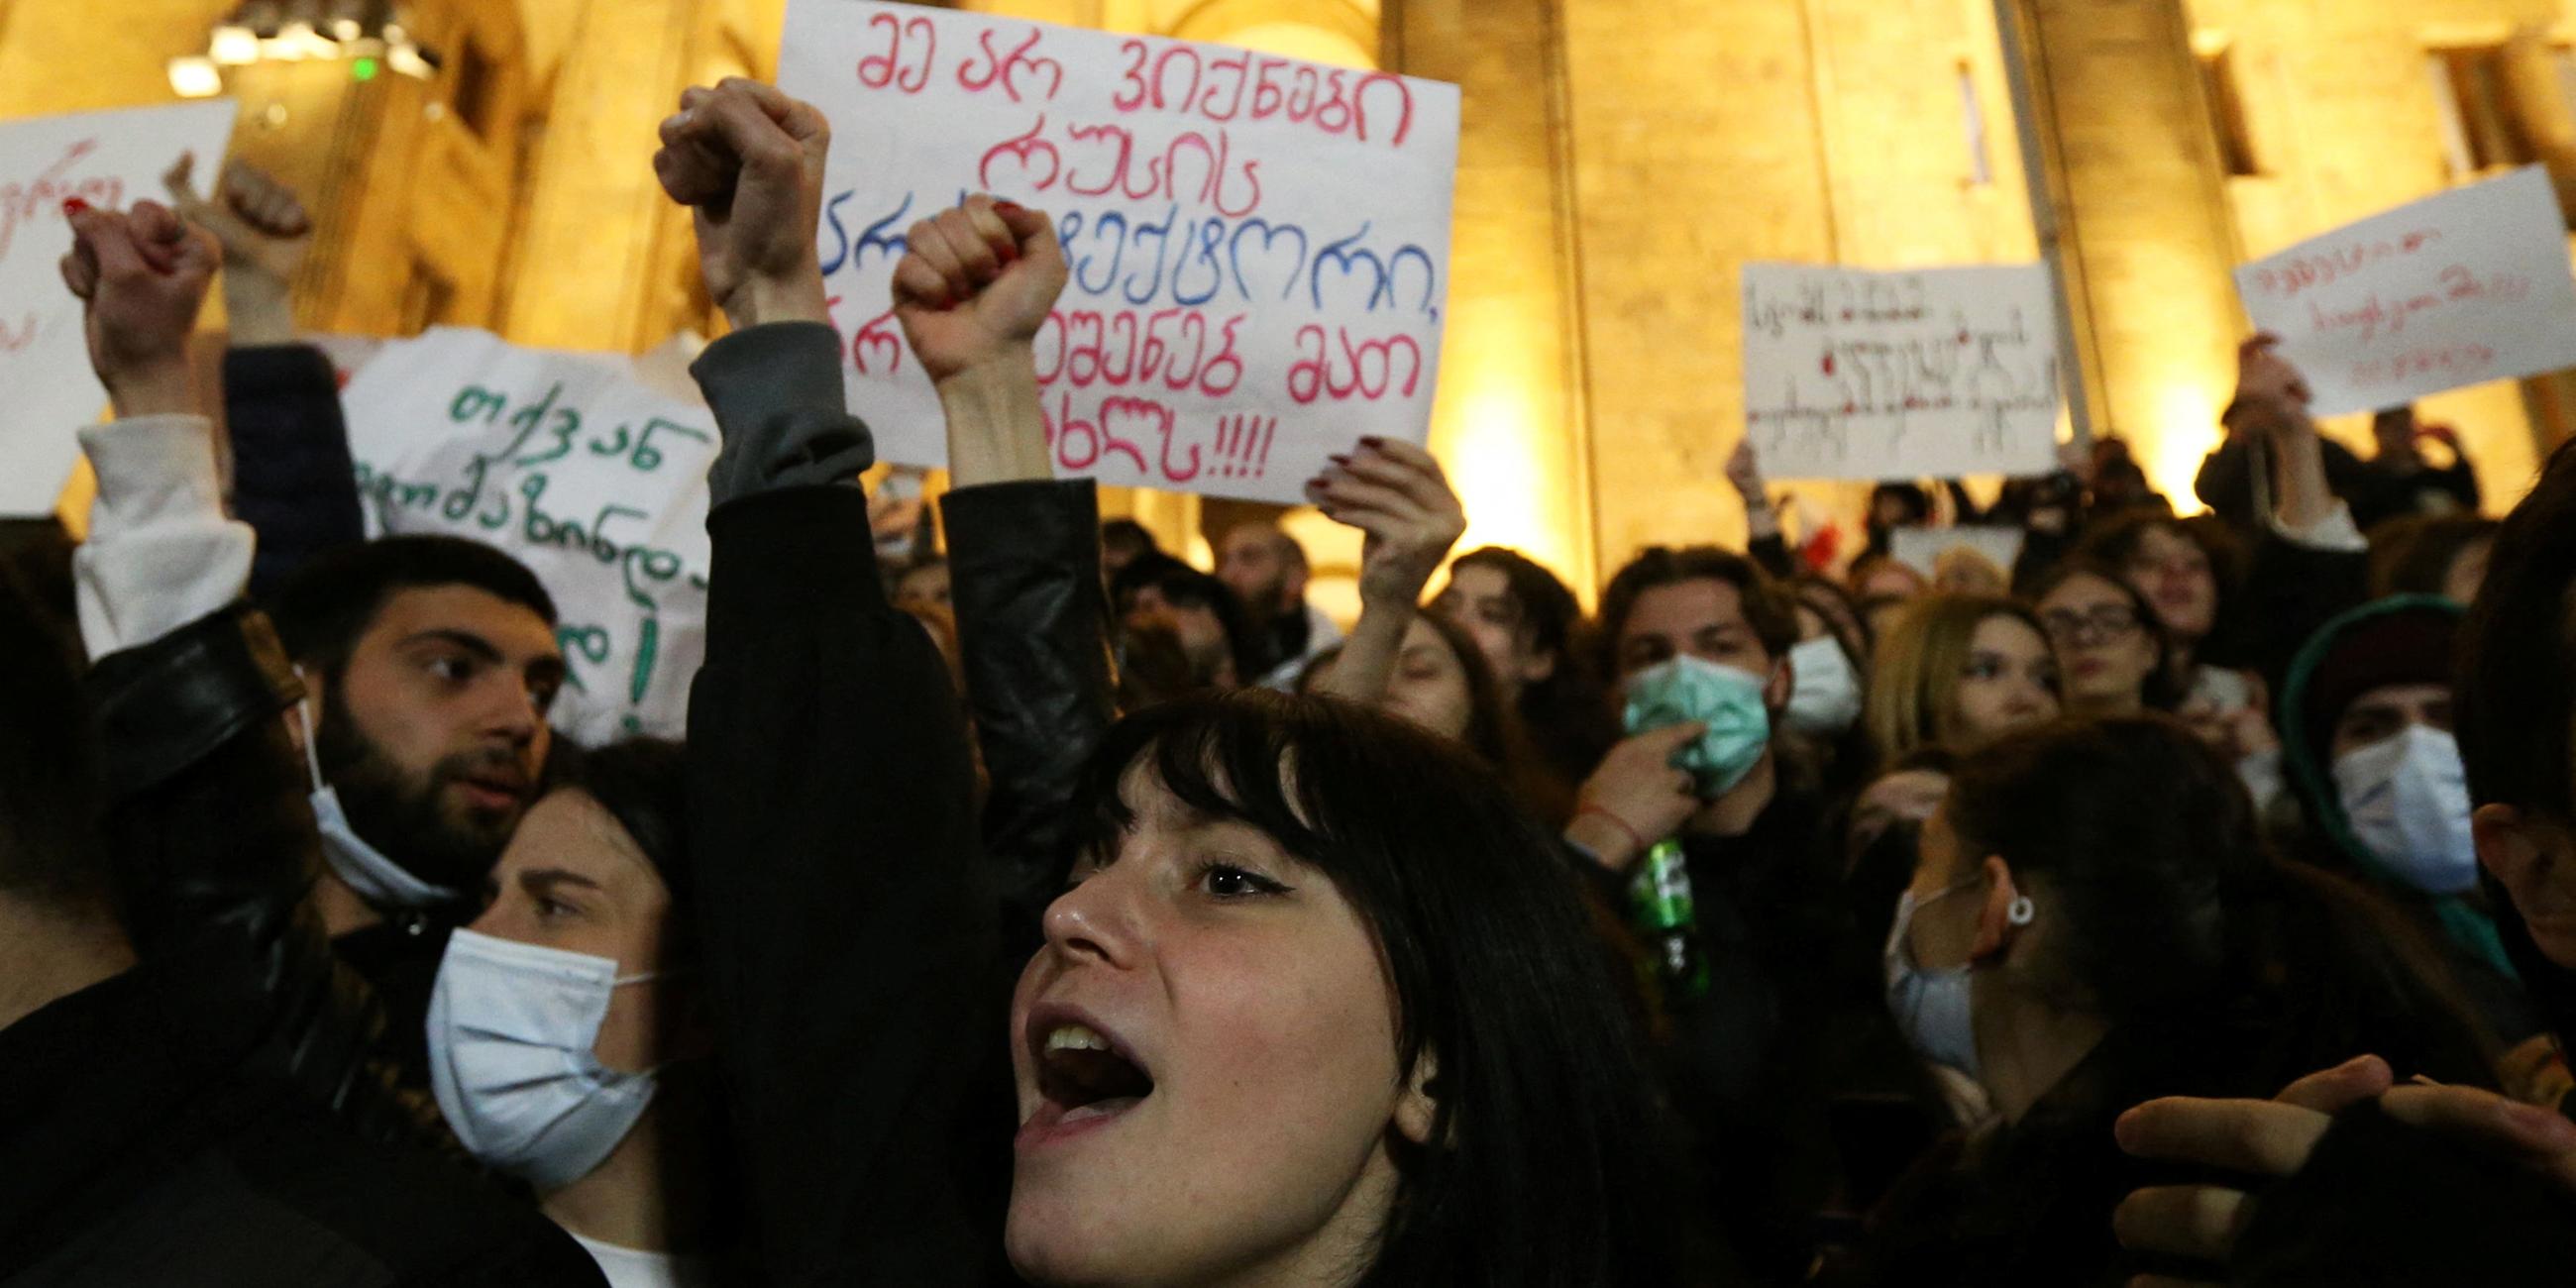 Georgien, Tiflis, Proteste vor dem Parlament